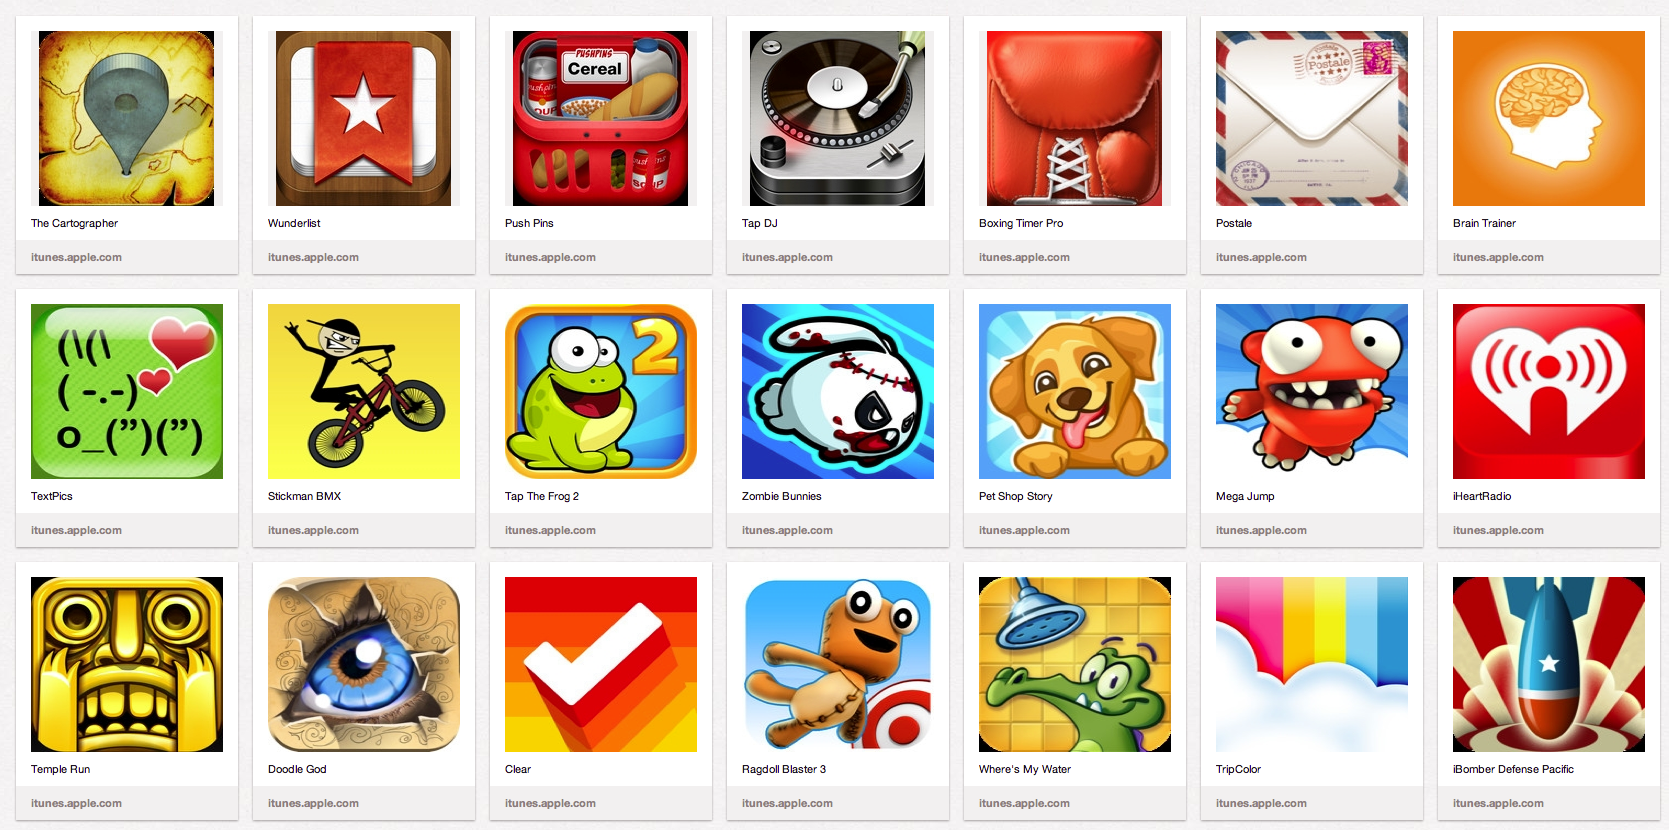 Games app играть. Приложение игры. Иконки игр в app Store. Arcade game app Store icon. Only app игра.